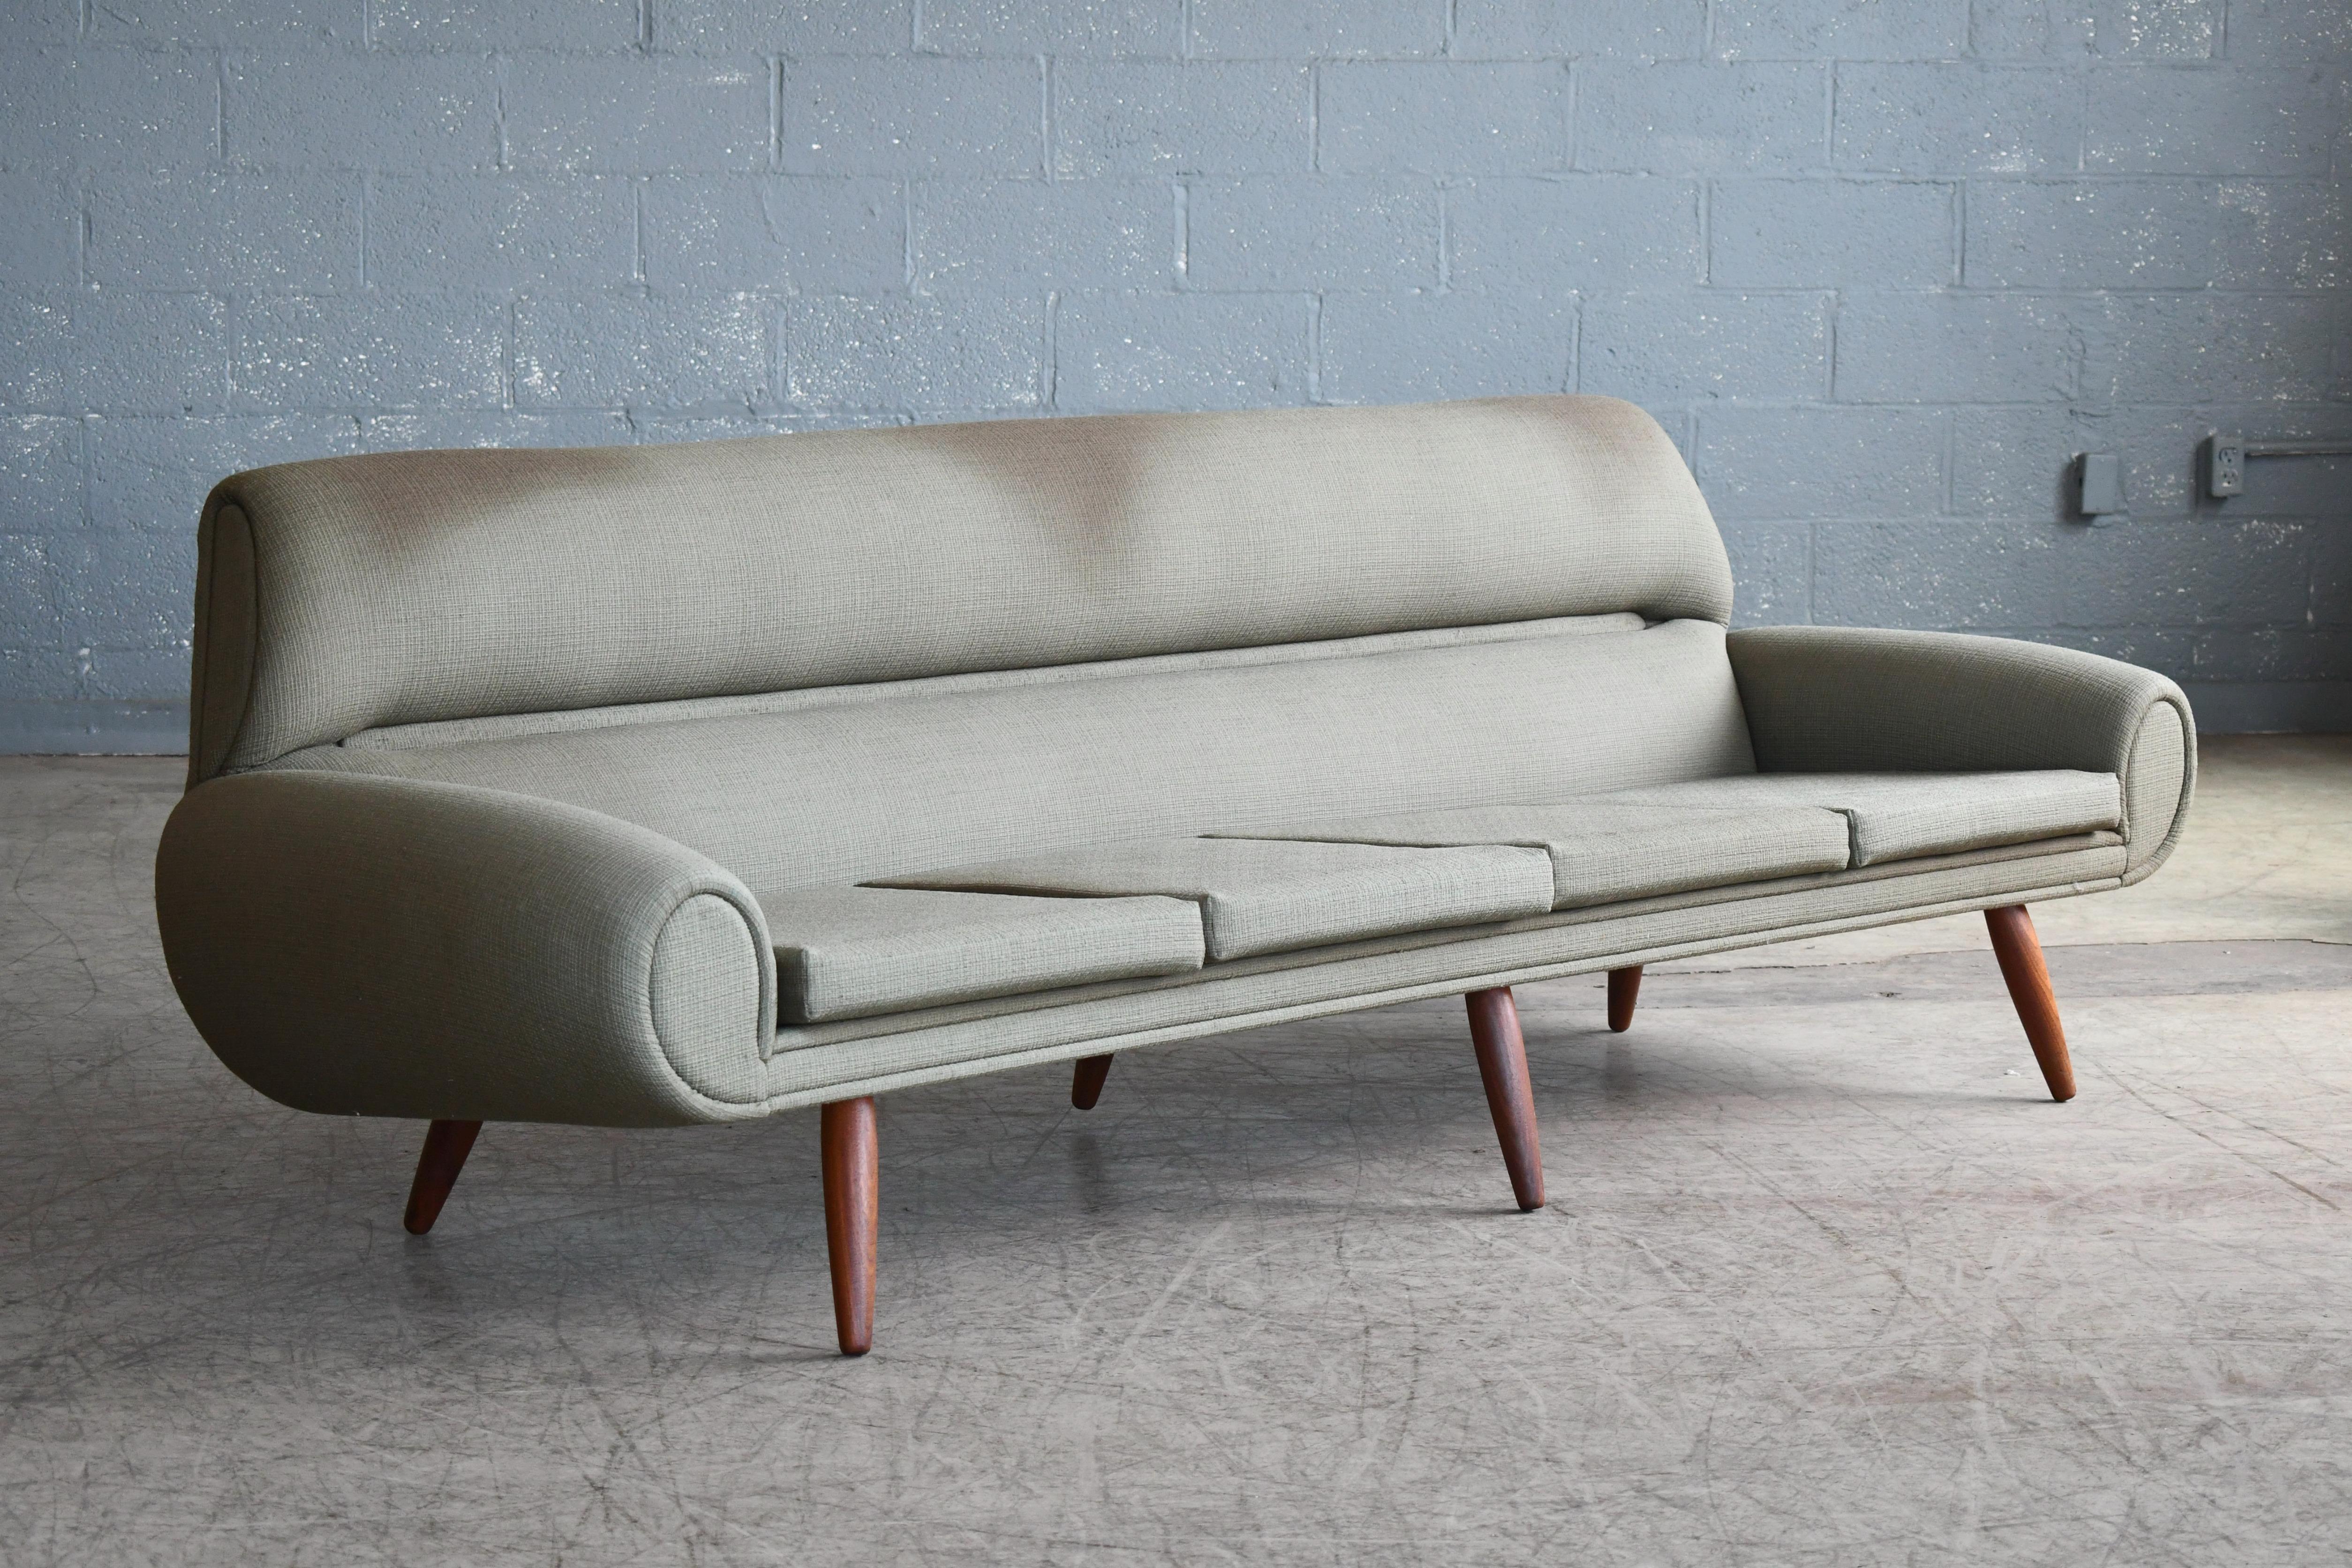 Erstaunlich Sofa schlanken organischen Design-Linien und nur der Inbegriff der besten der dänischen Designer der 1960er Jahre zu bieten hatte. Einige dieser fantastischen Entwürfe waren in vielerlei Hinsicht das letzte Hoch auf die dänische Moderne,